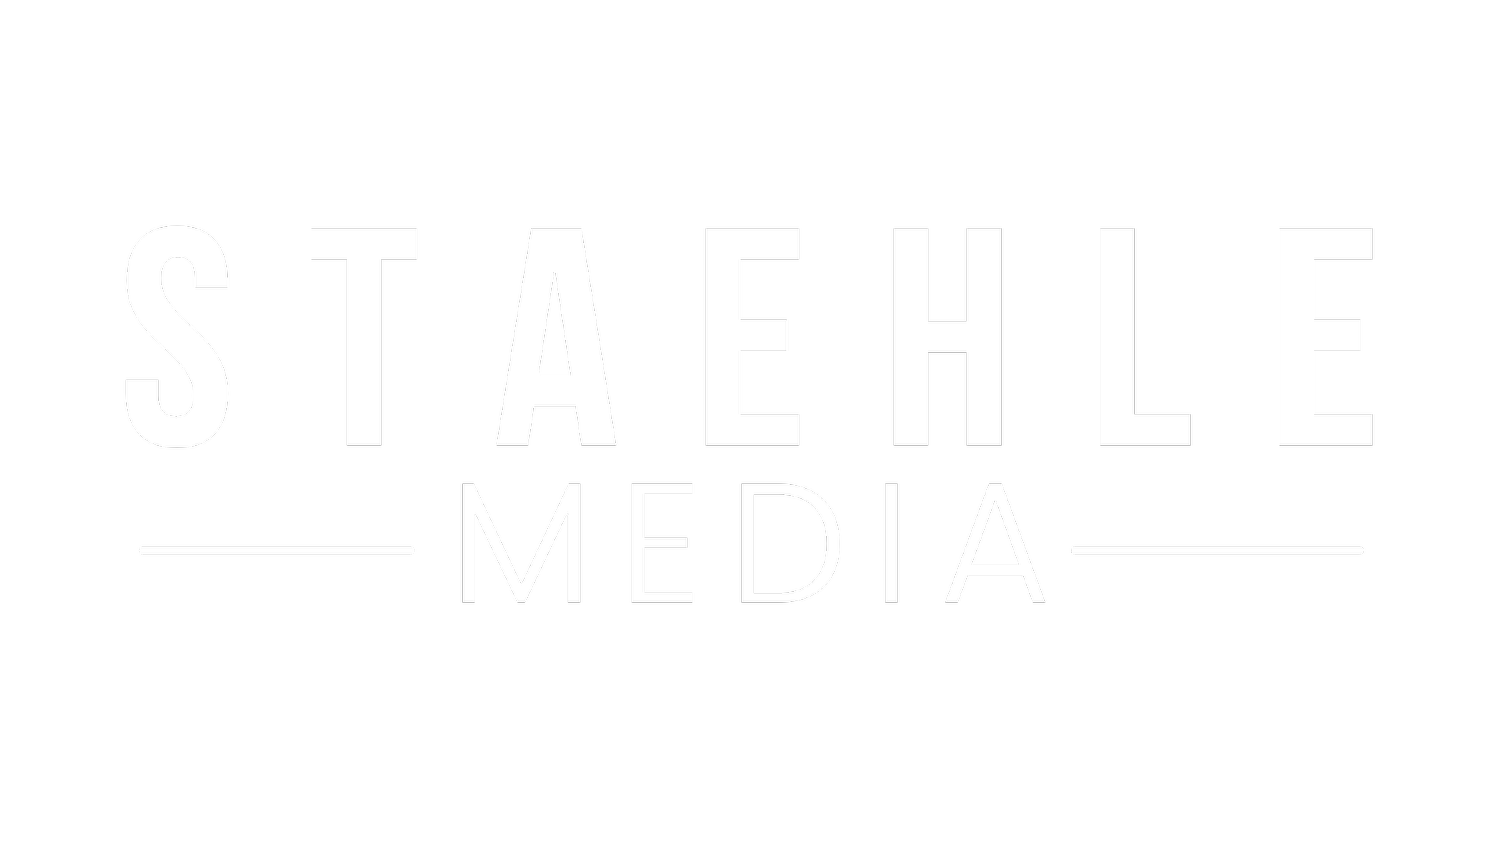 Staehle Media